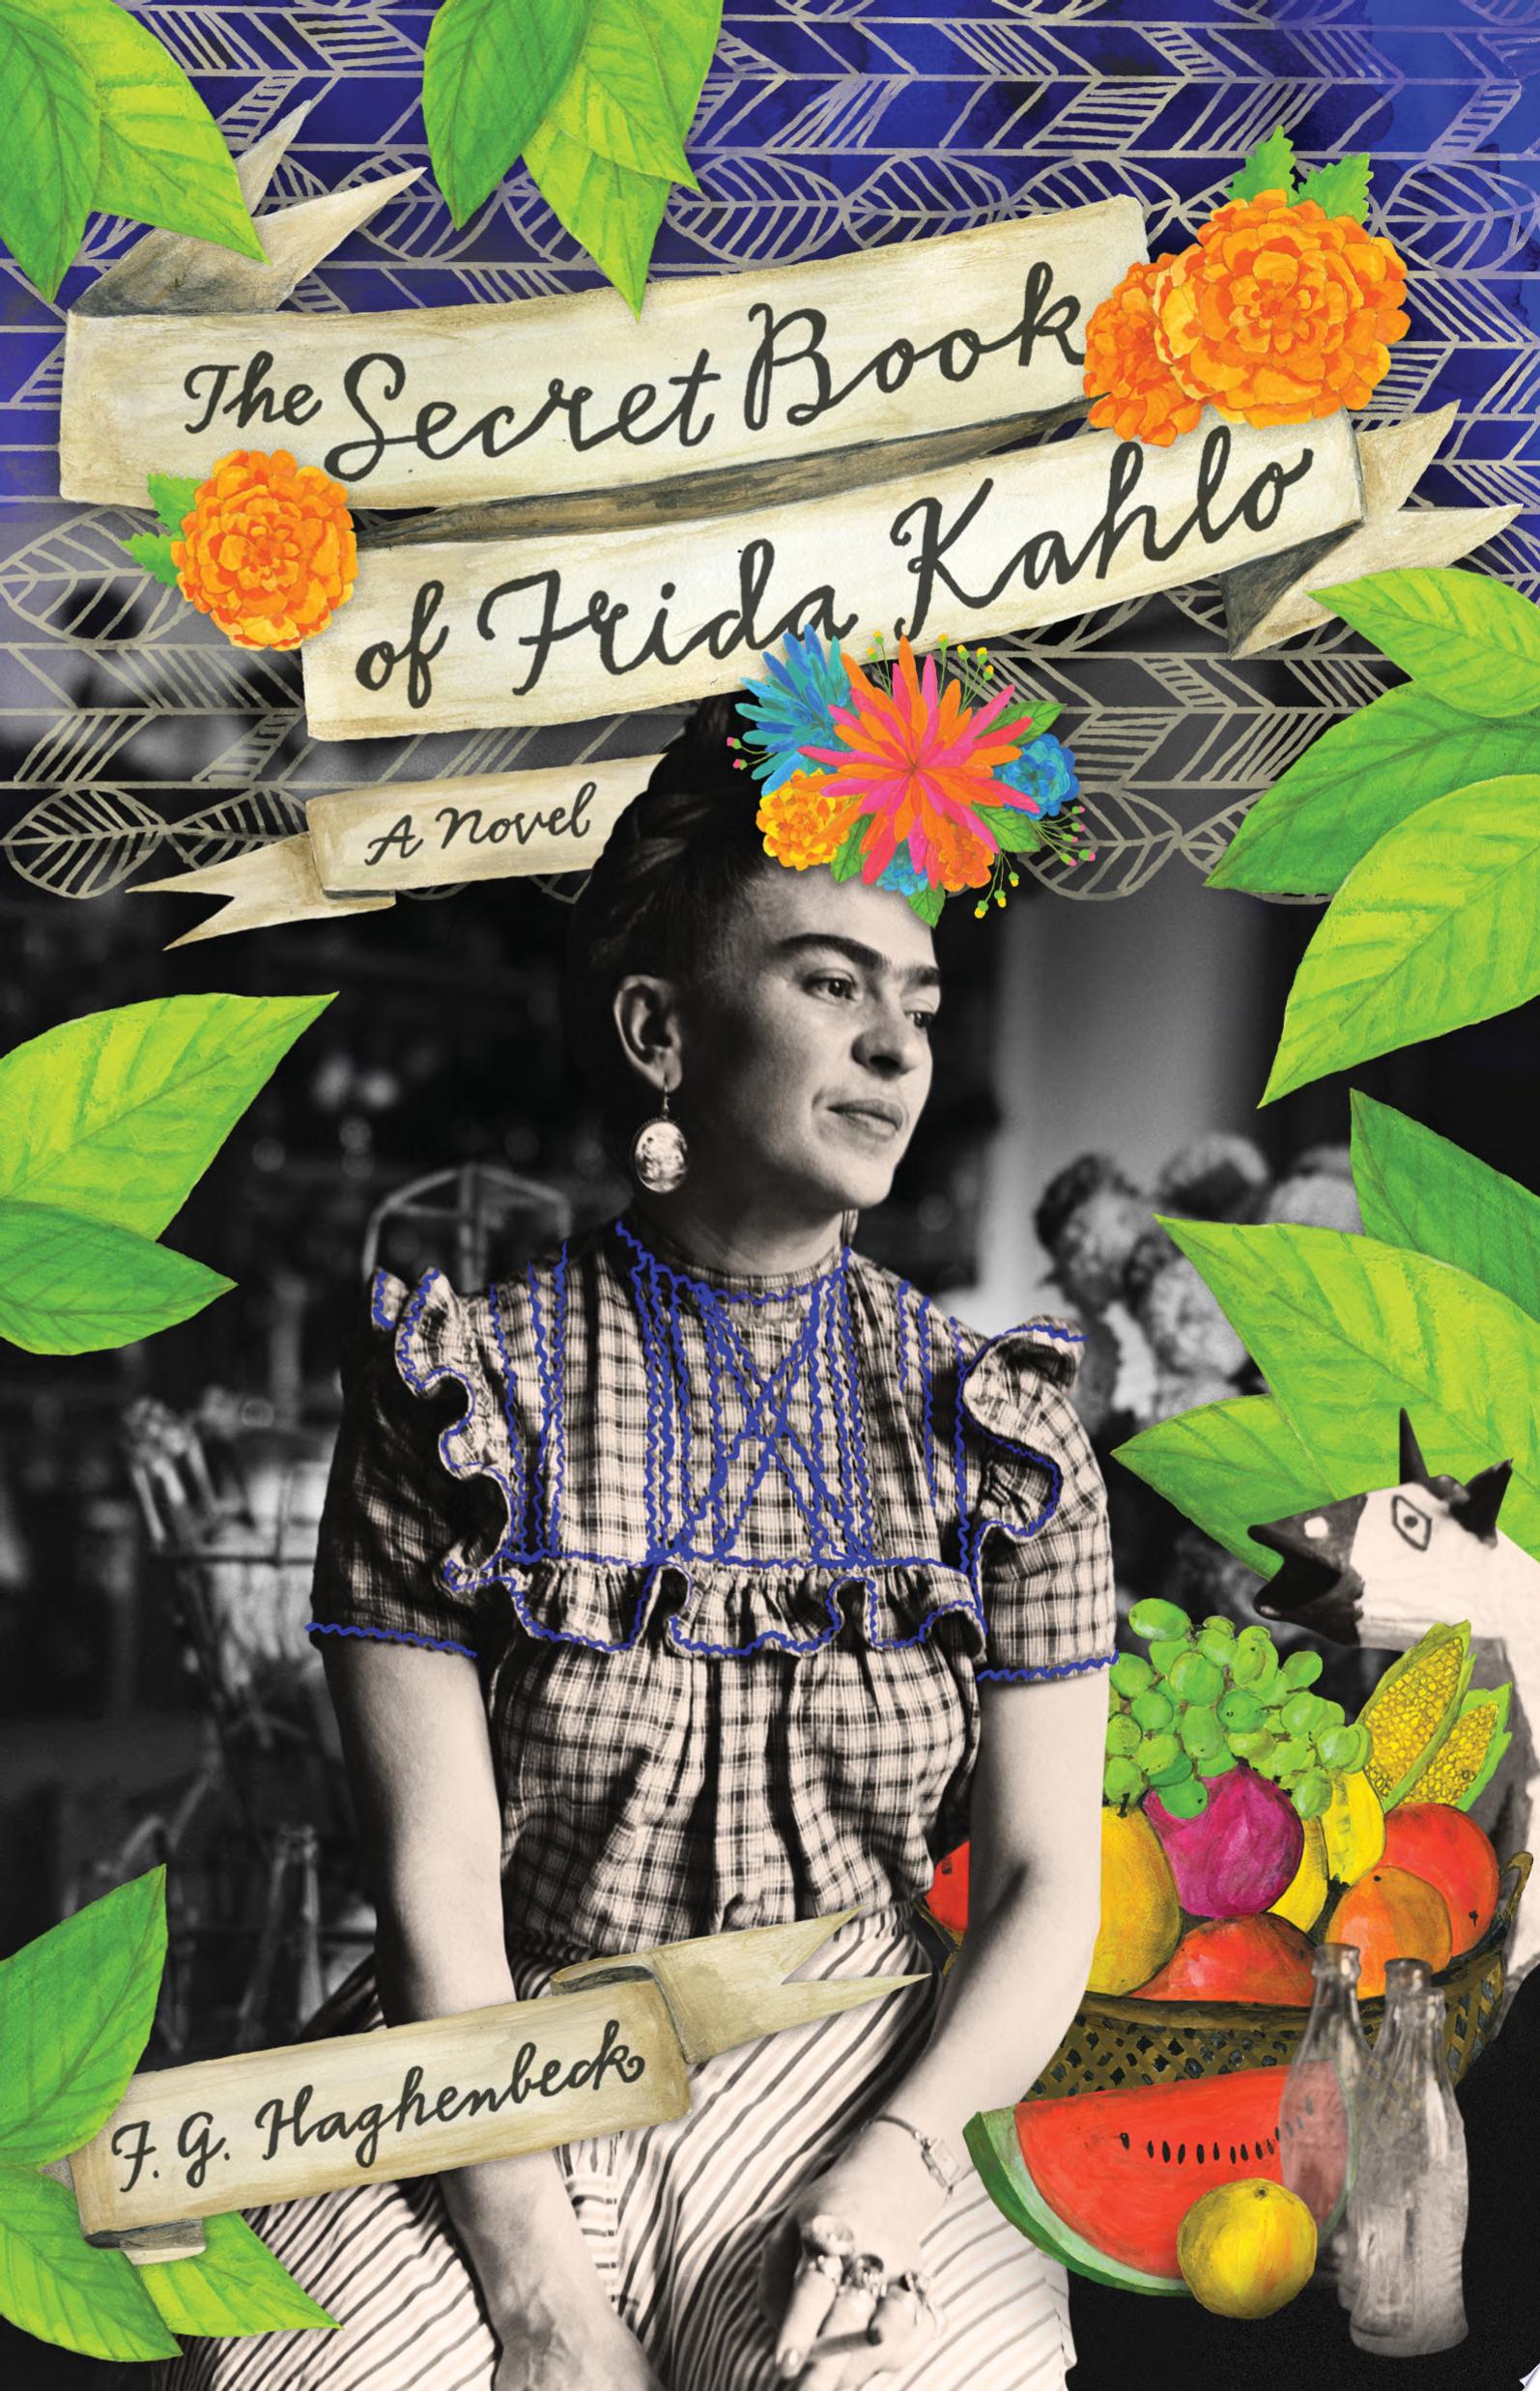 Image for "The Secret Book of Frida Kahlo"